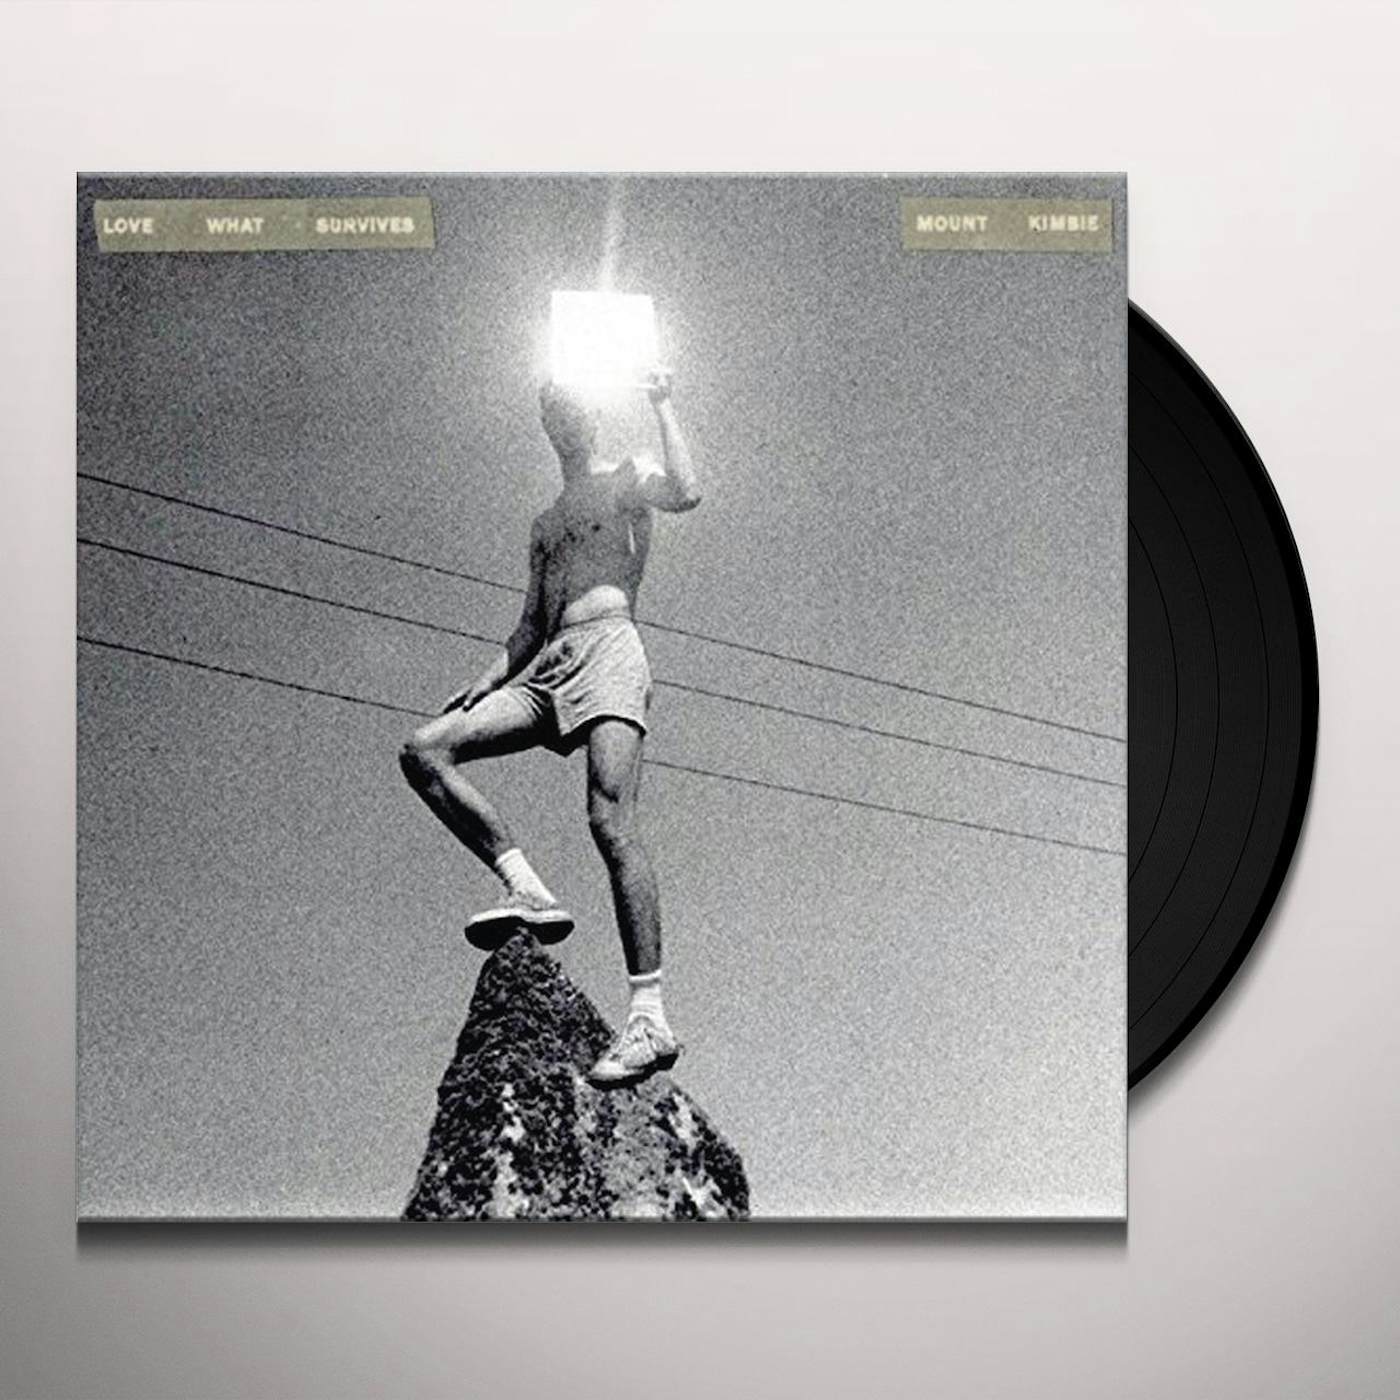 Mount Kimbie LOVE WHAT SURVIVES REMIXES PART 2 Vinyl Record